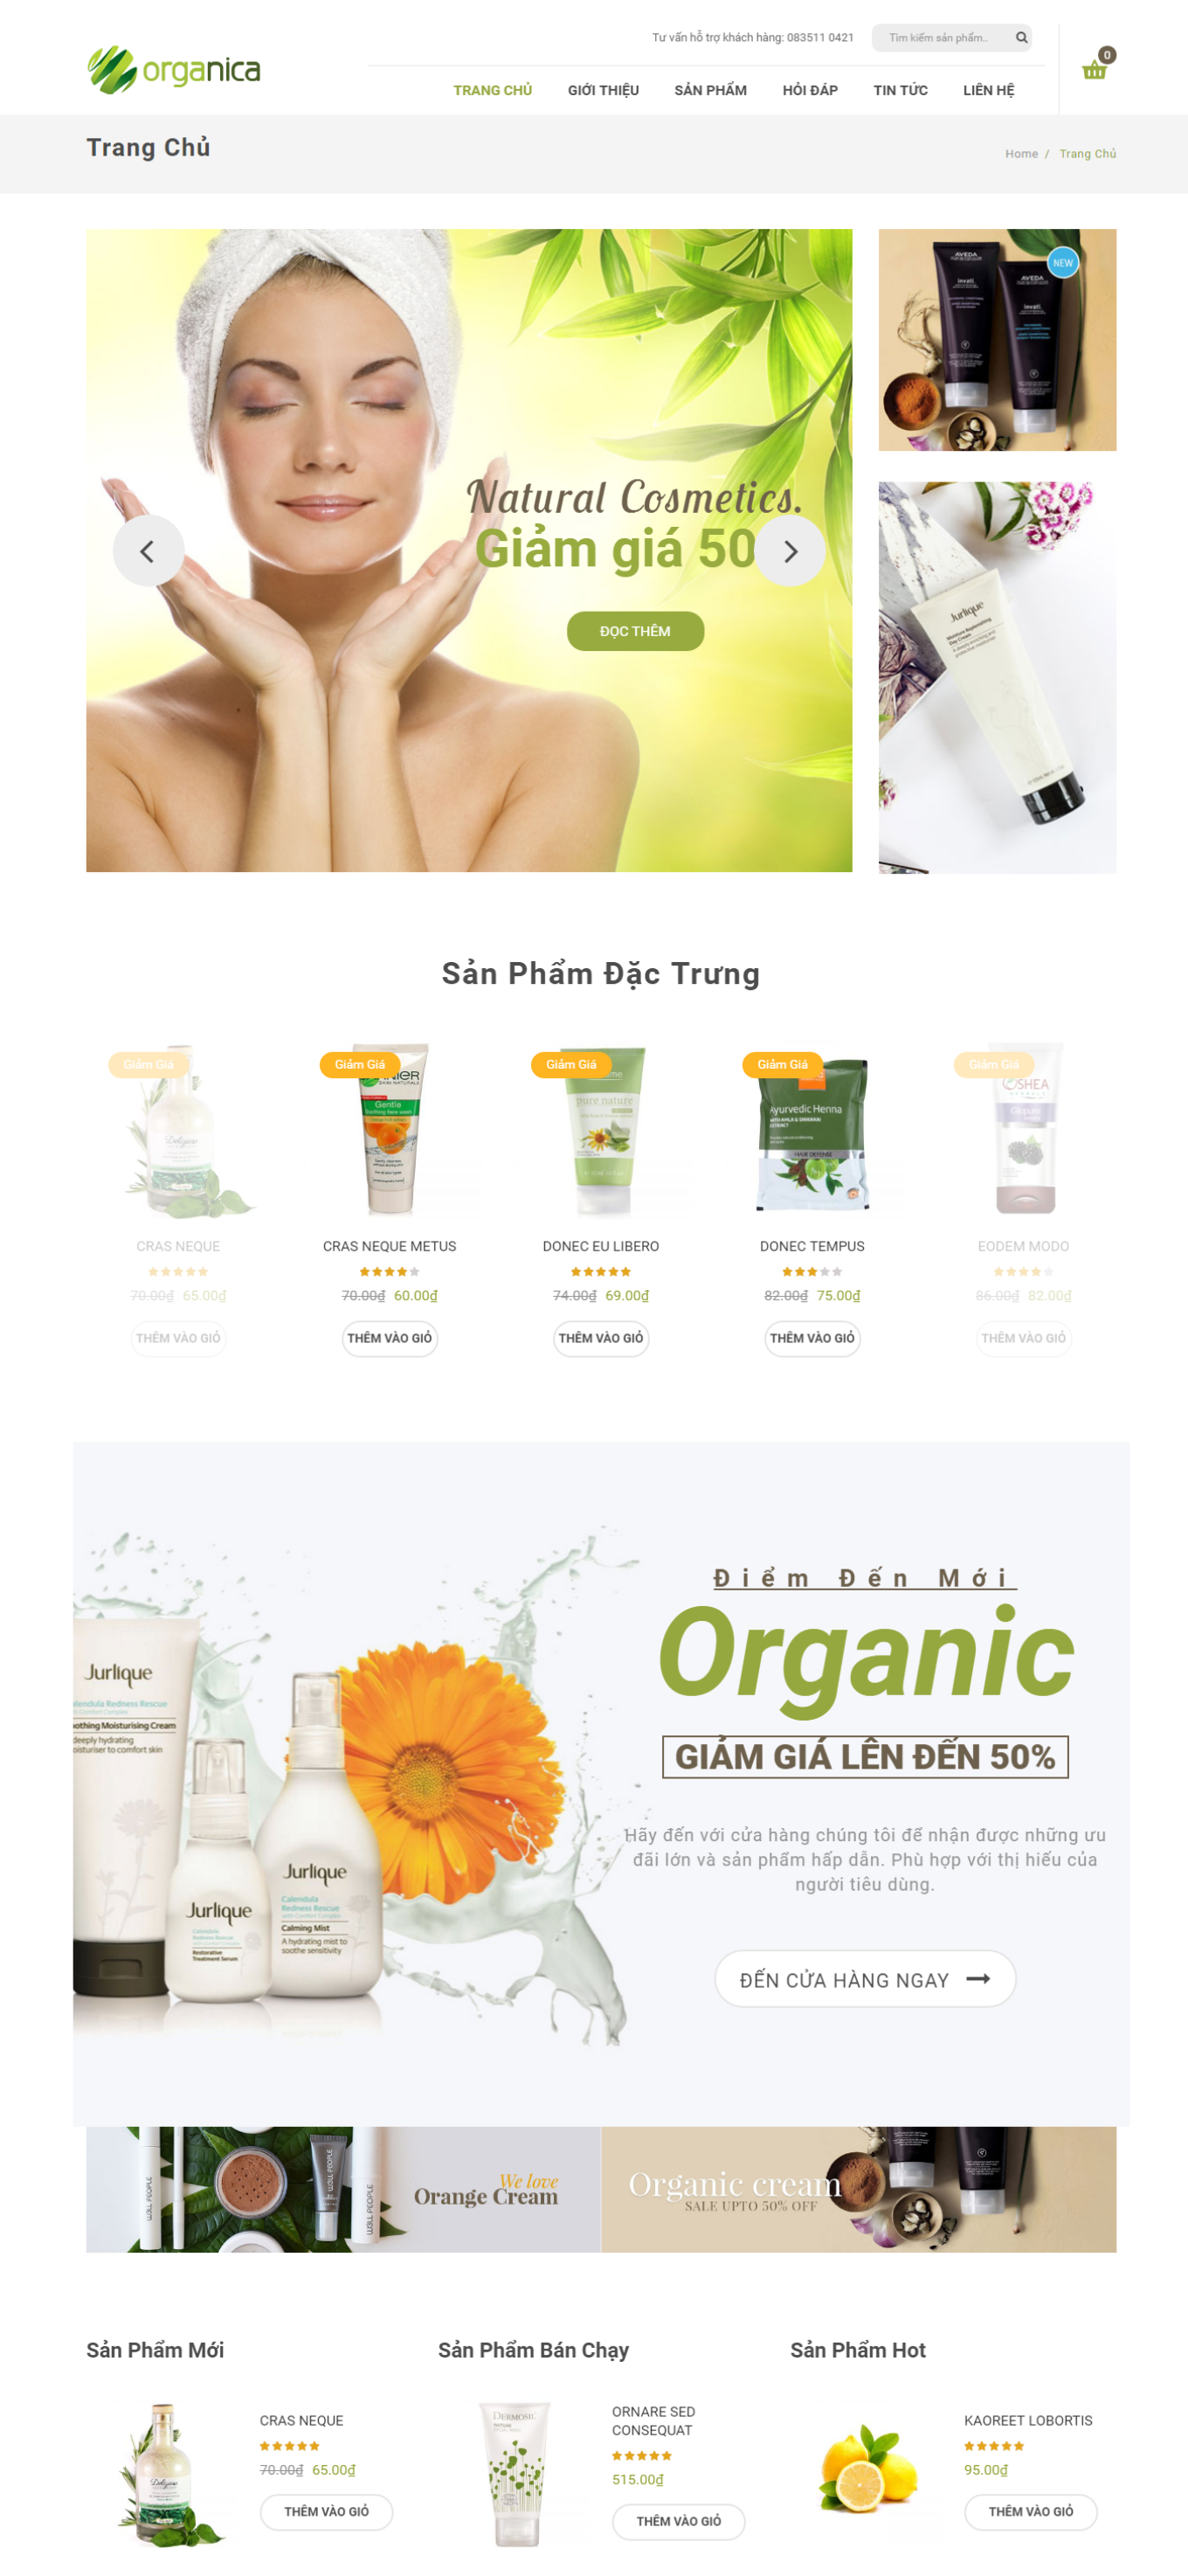 Mẫu website bán hàng mỹ phẩm - Organica2